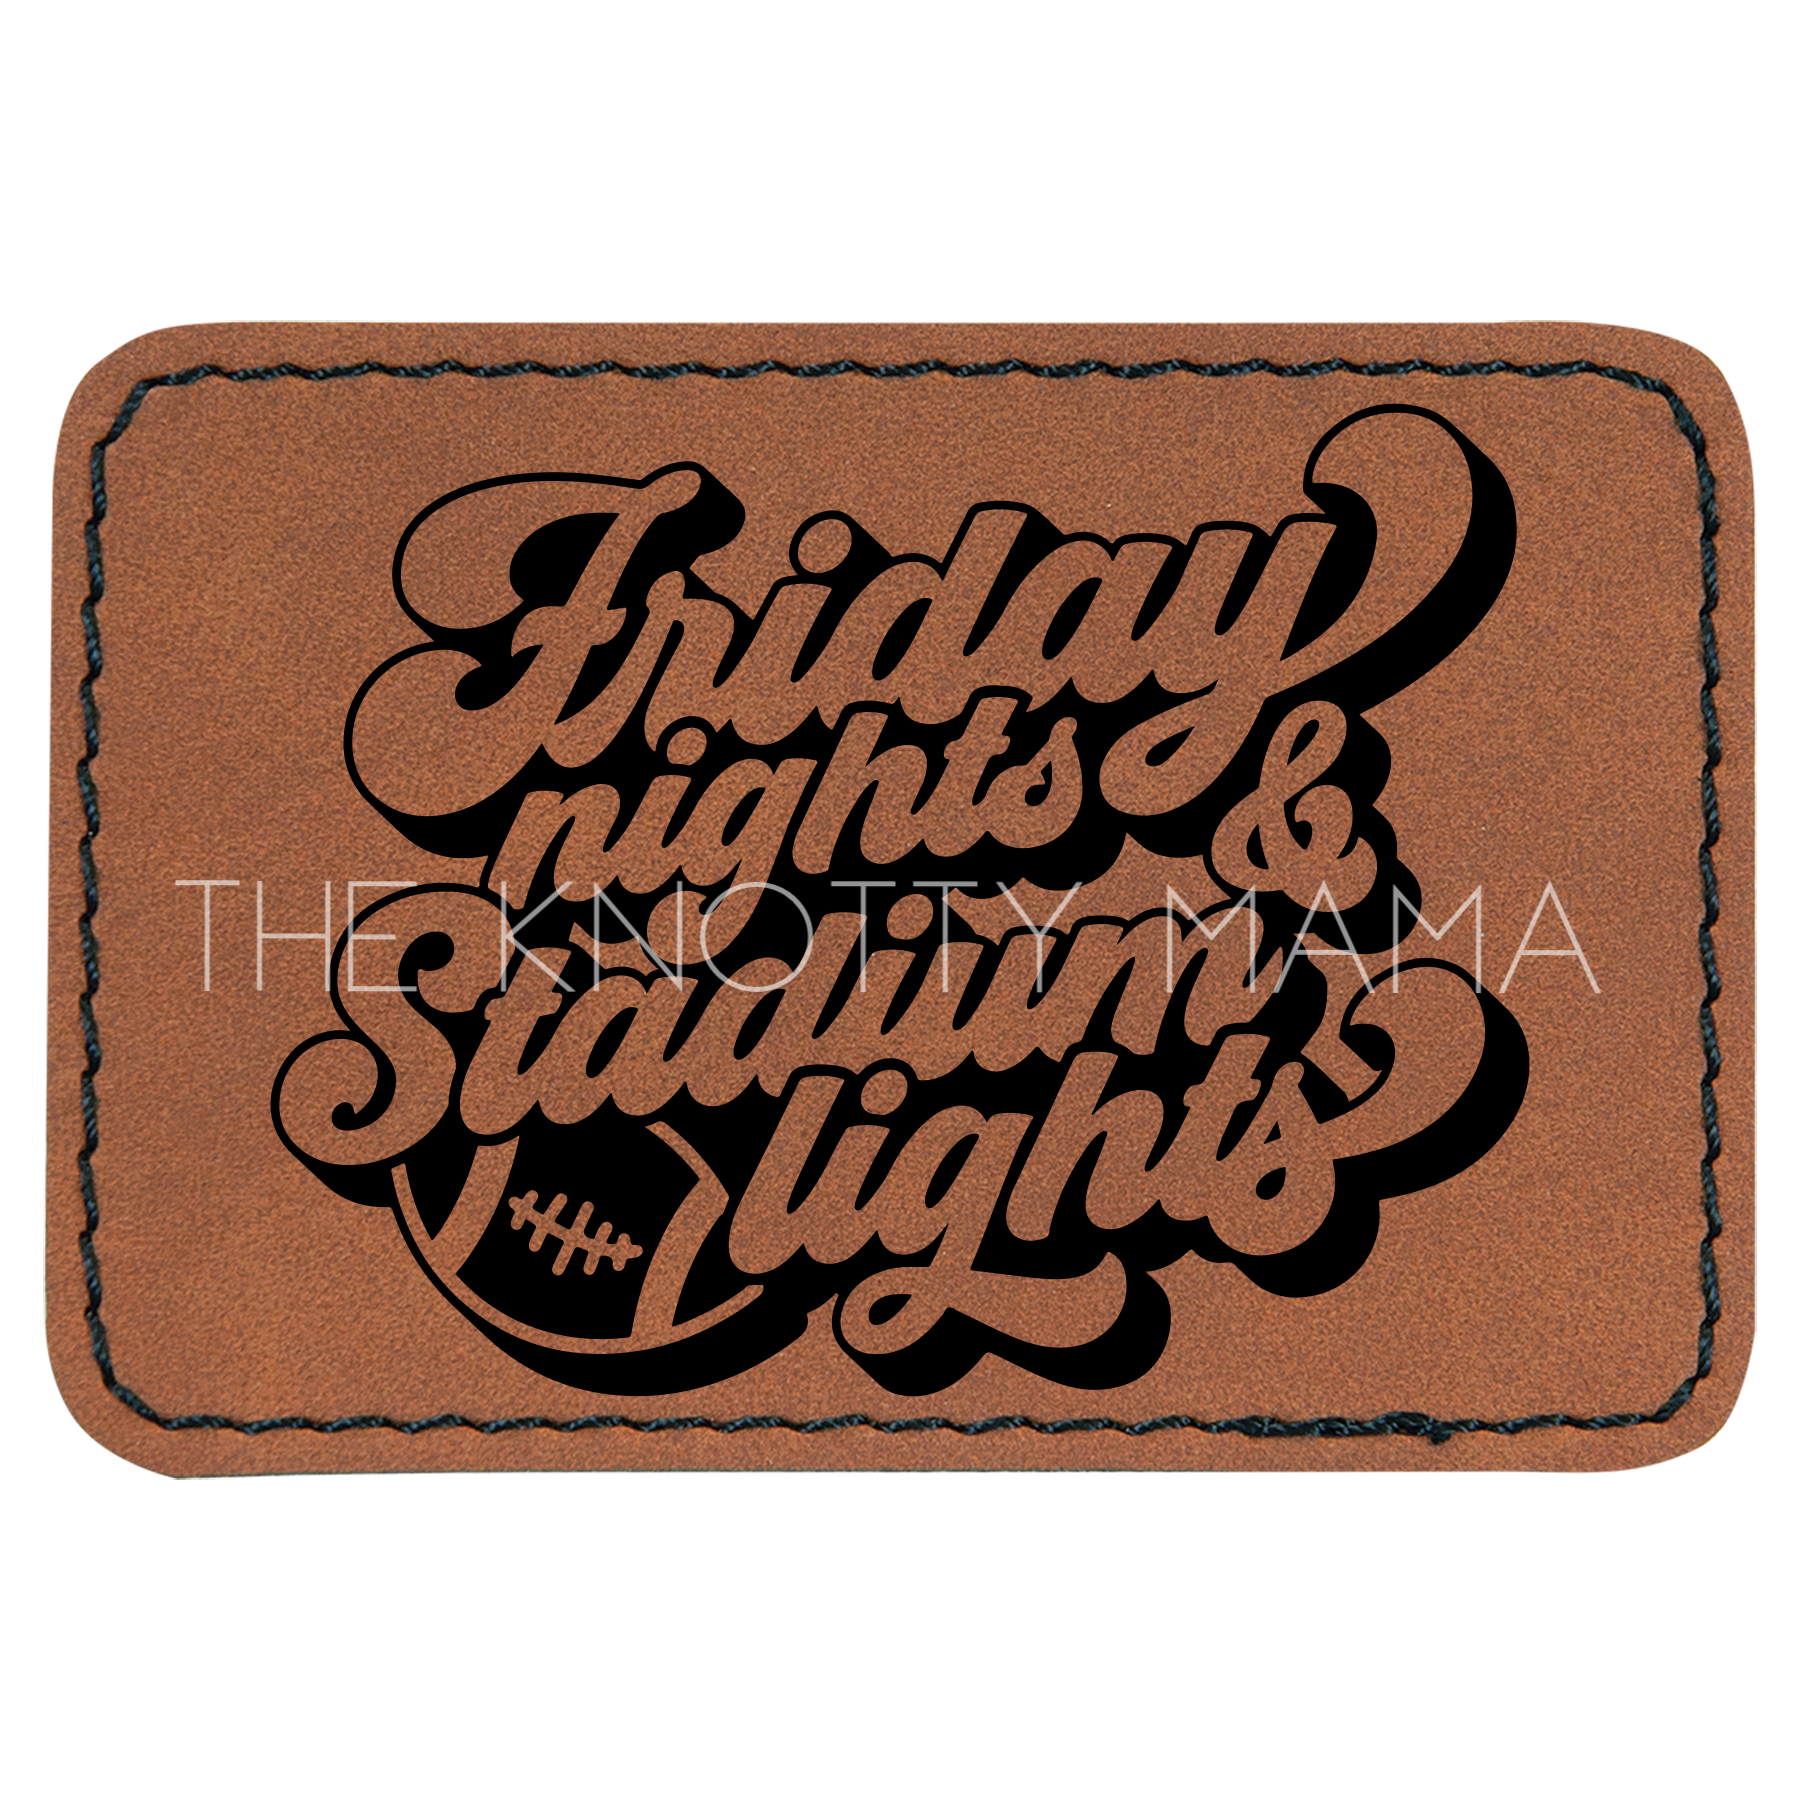 Friday Nights And Stadium Lights Retro Patch